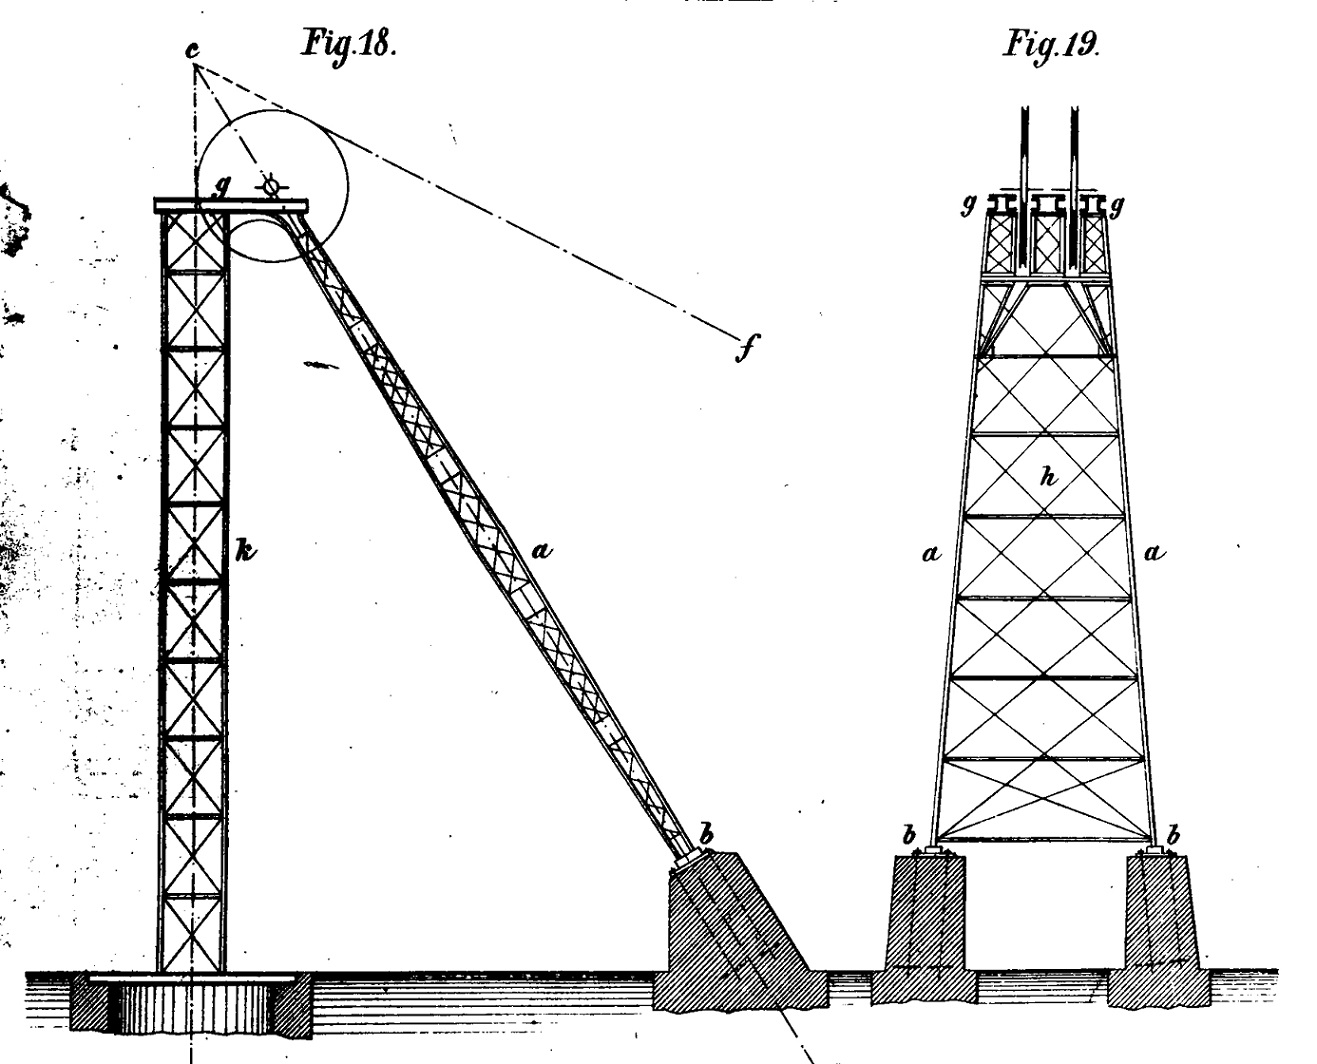 Födergerüst, Promnitz (Bild: Eichenauer, A., Die Seilscheibengerüste der Bergwerks-Förderanlagen, Leipzig 1877)